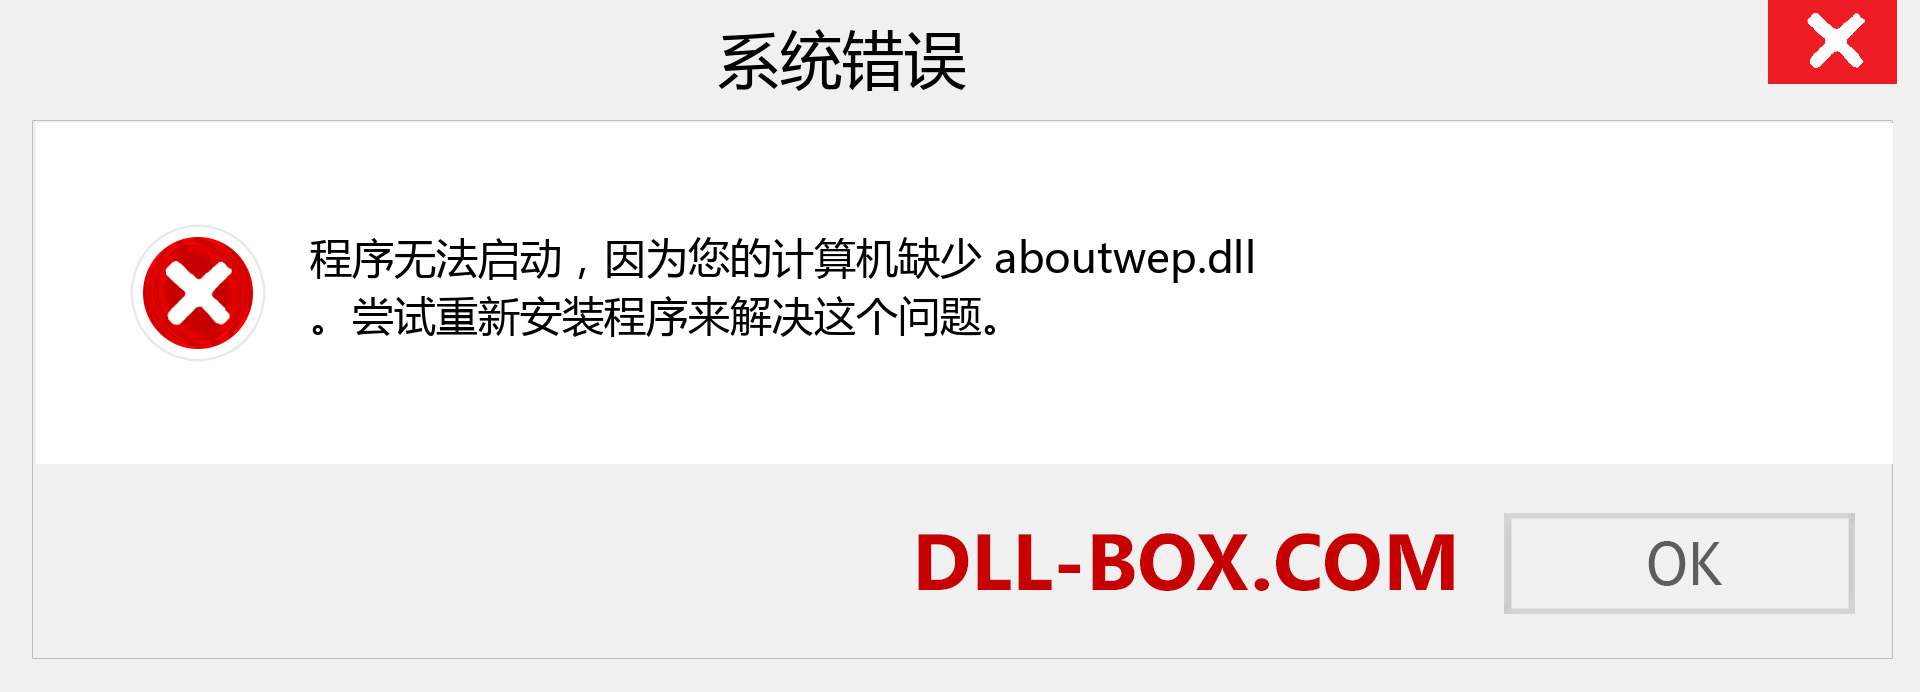 aboutwep.dll 文件丢失？。 适用于 Windows 7、8、10 的下载 - 修复 Windows、照片、图像上的 aboutwep dll 丢失错误